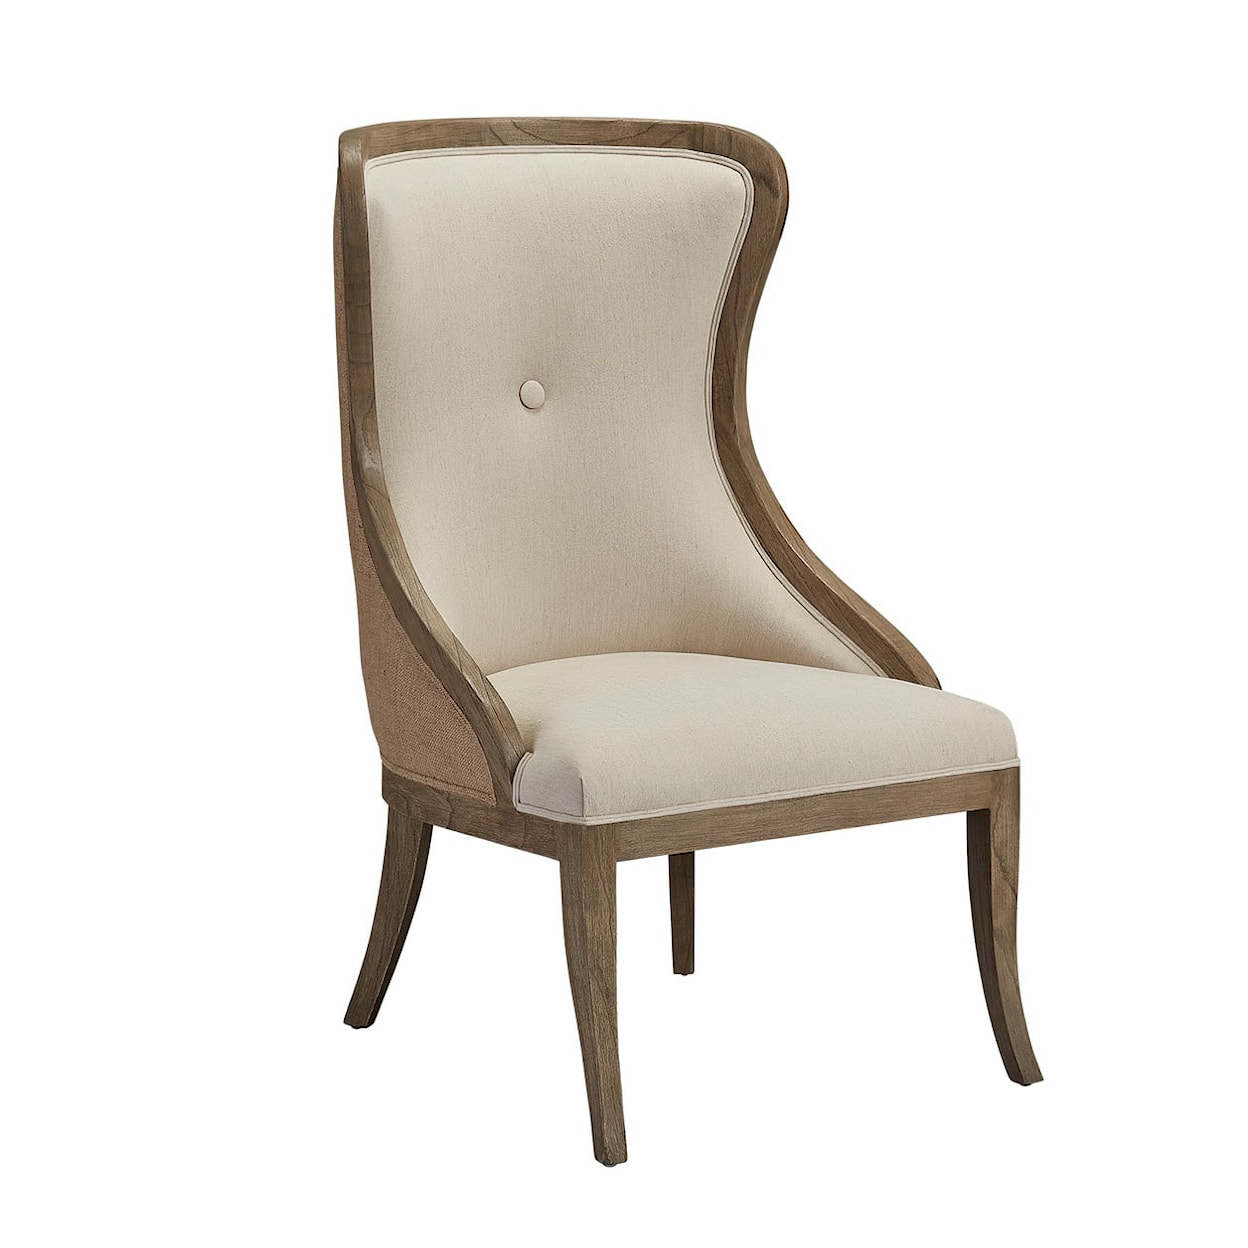 Furniture Classics Furniture Classics Emma's Buttoned Chair